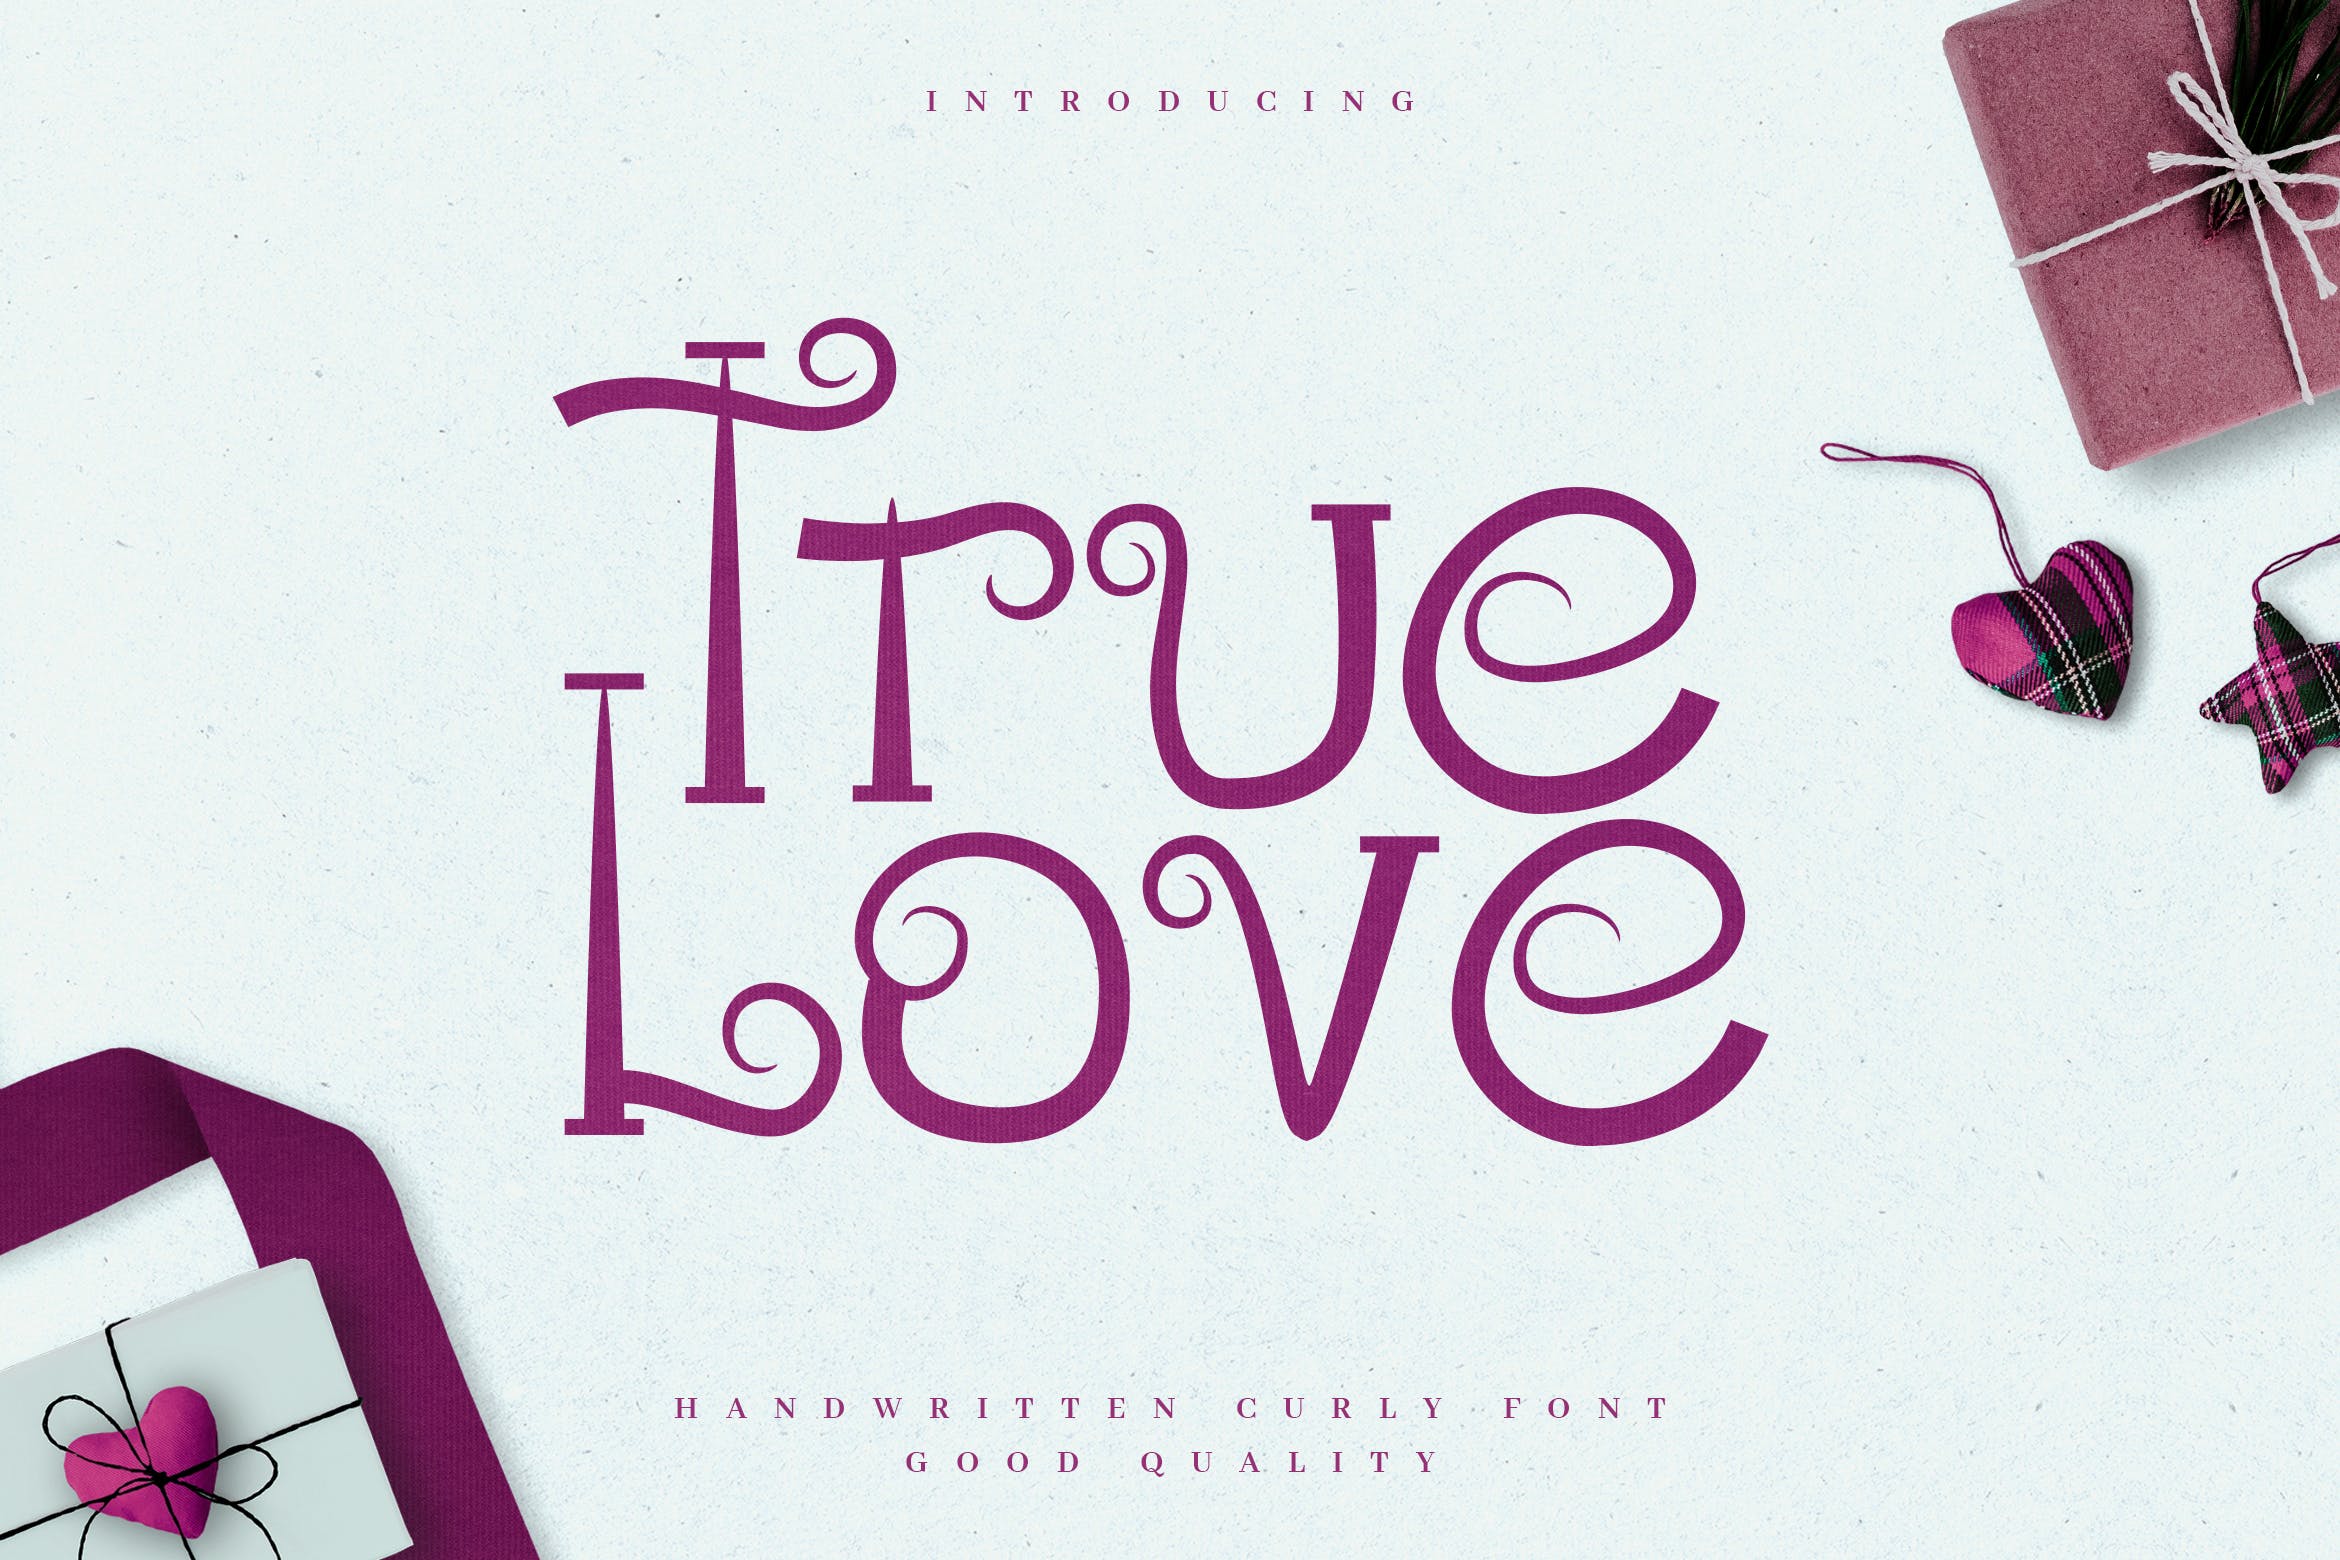 浪漫主义风格英文无衬线装饰字体蚂蚁素材精选 True Love – Curly Valentine Font插图